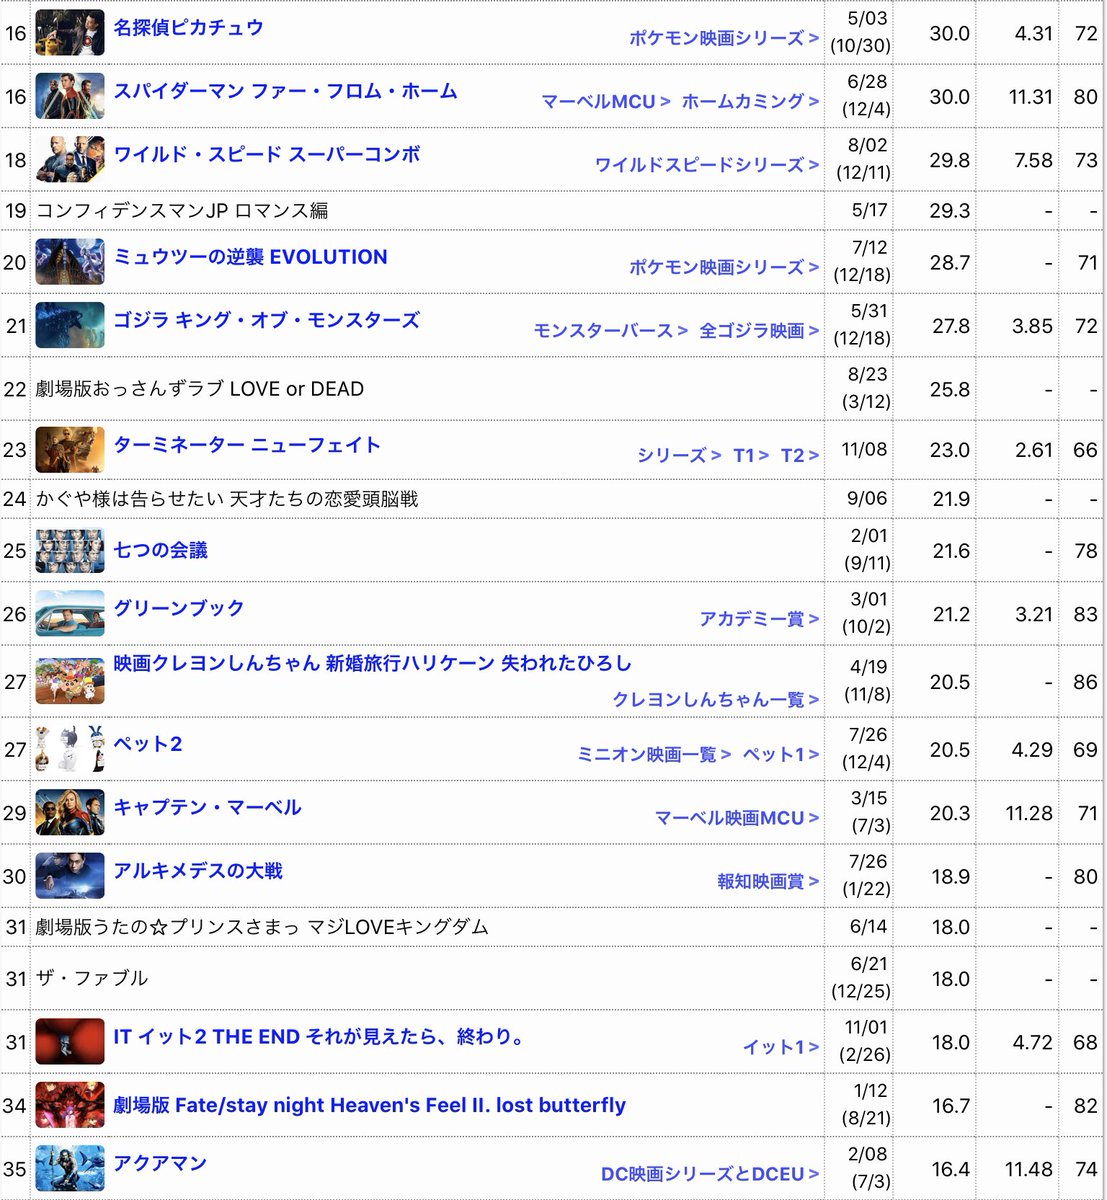 june on twitter 2019年映画興行収入ランキング 2019年1月 12月 日本における映画興行収入ランキング 観たい映画の参考に 1位 天気の子 世界も含むと素晴らしい記録 5位 コナン こんなに人気あったことに驚いた 評価1位 27位 クレヨンしんちゃん